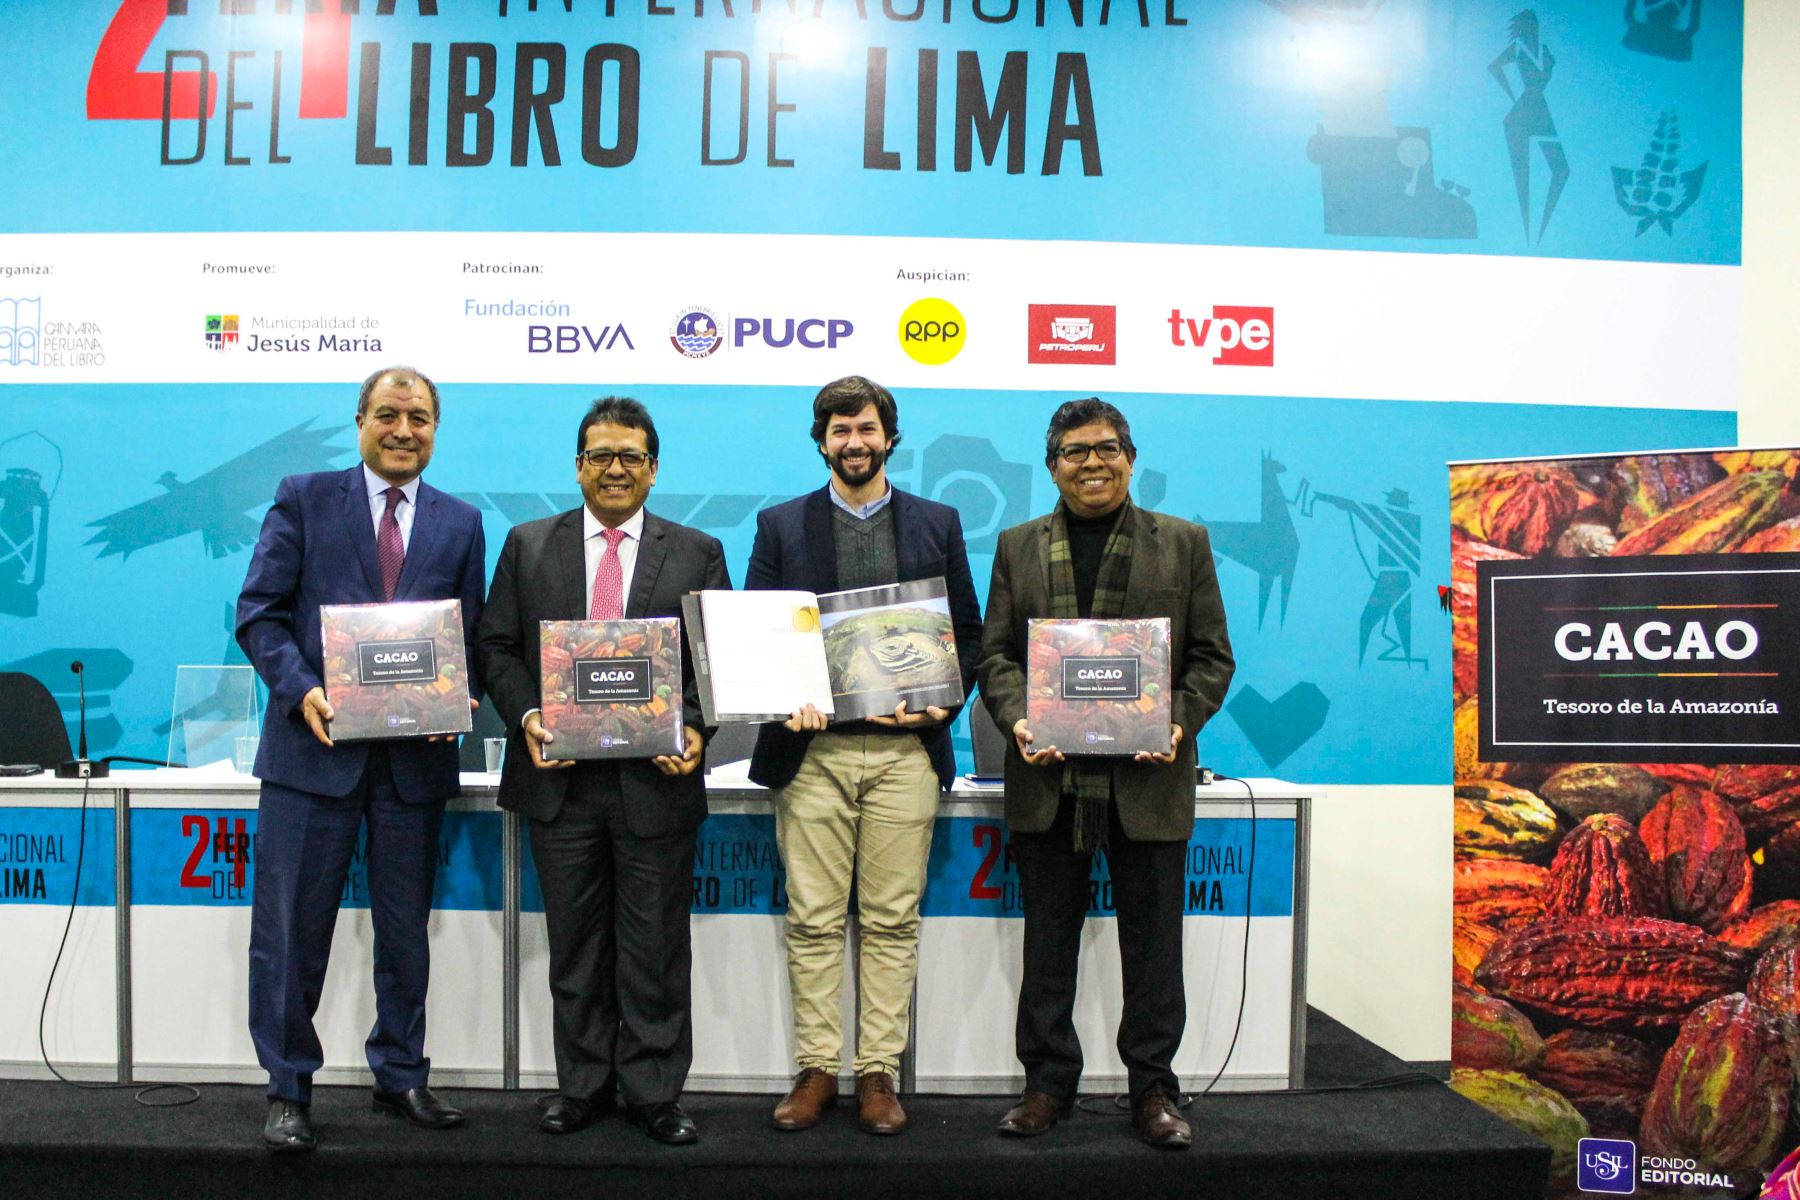 Premian a libro “Cacao. Tesoro de la Amazonía” en certamen gastronómico mundial Gourmand World Awards 2019. ANDINA/Difusión